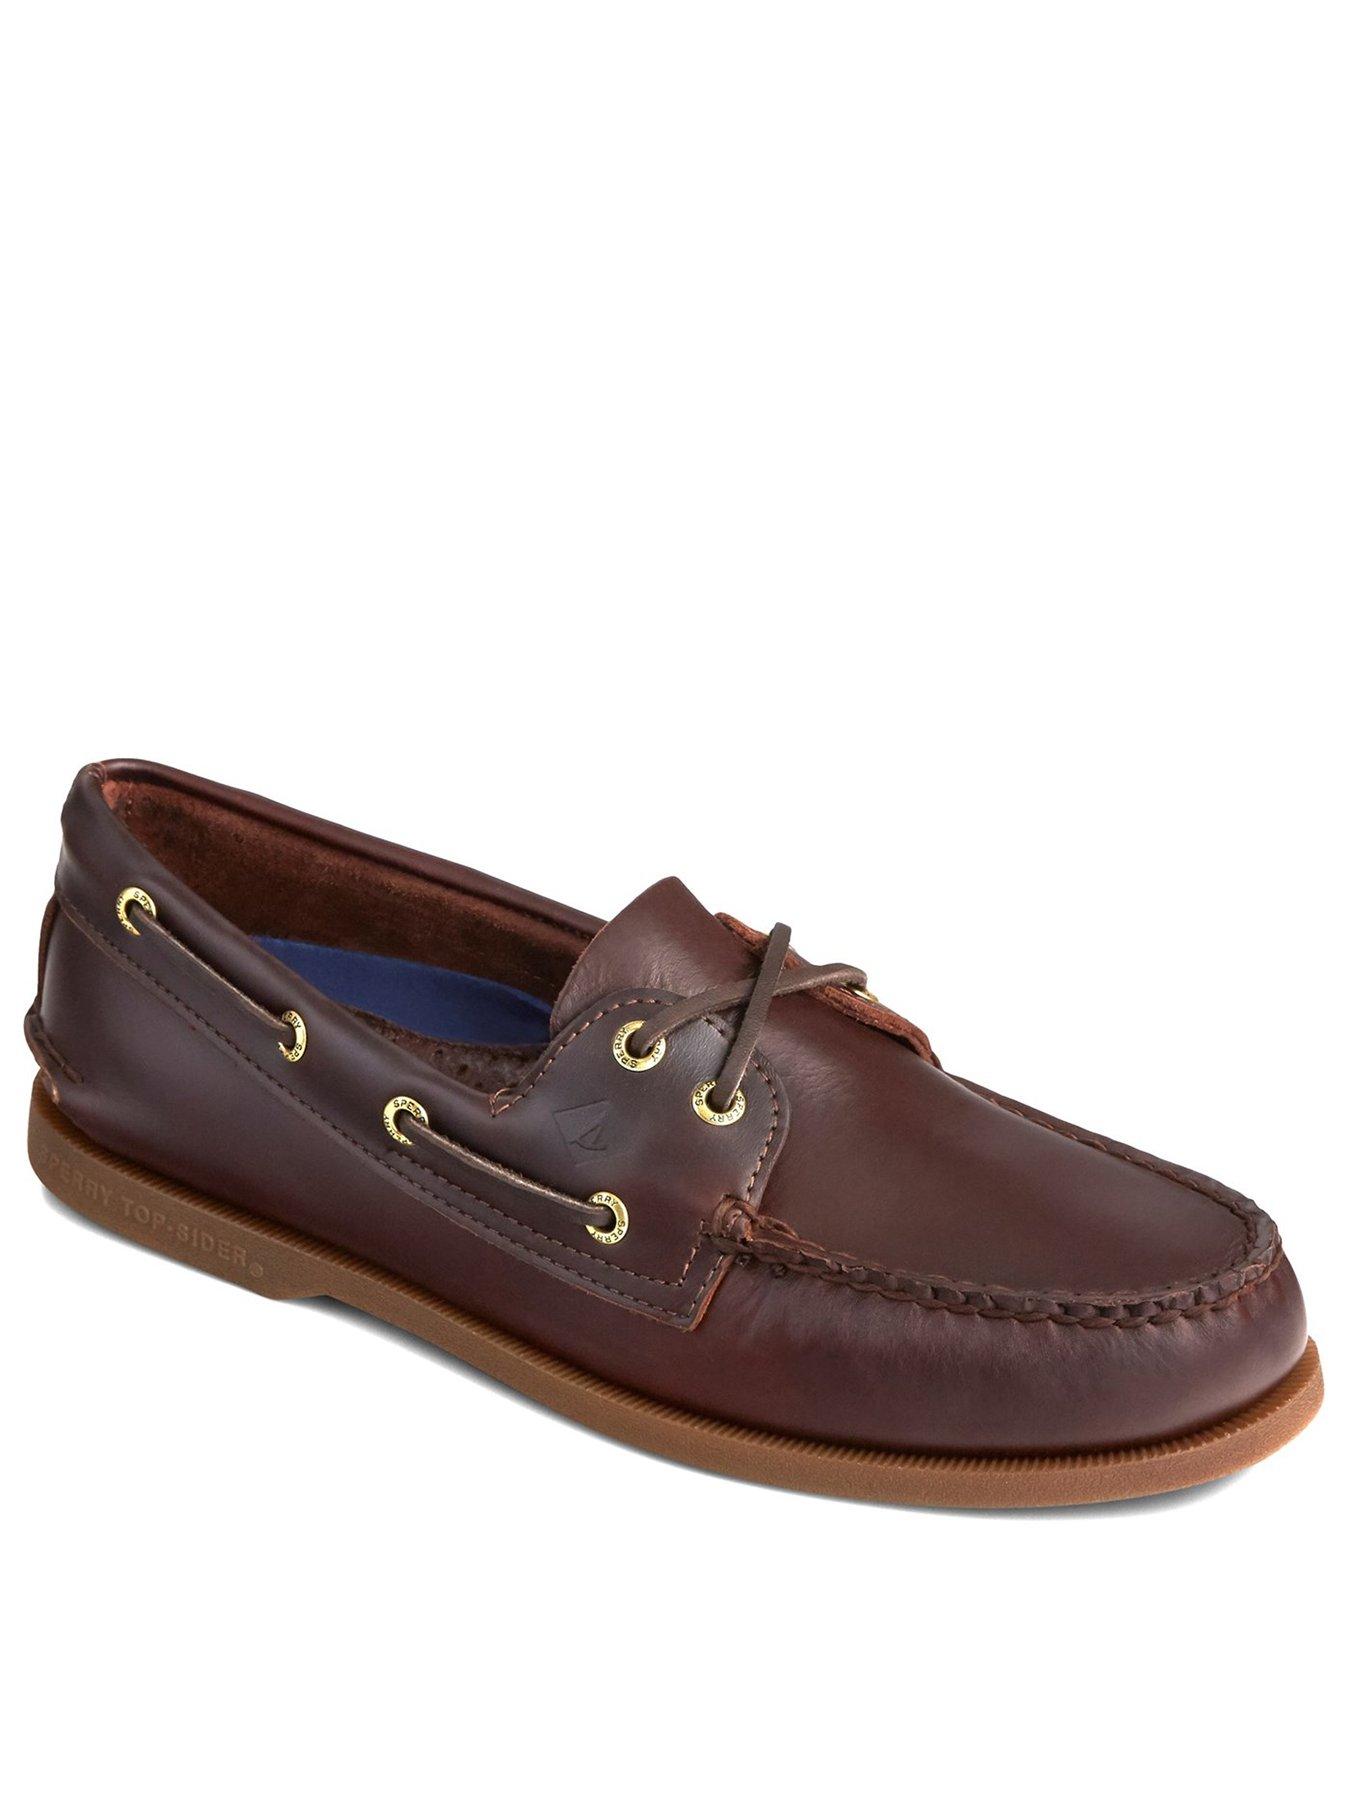 Men Authentic Original Leather Boat Shoes